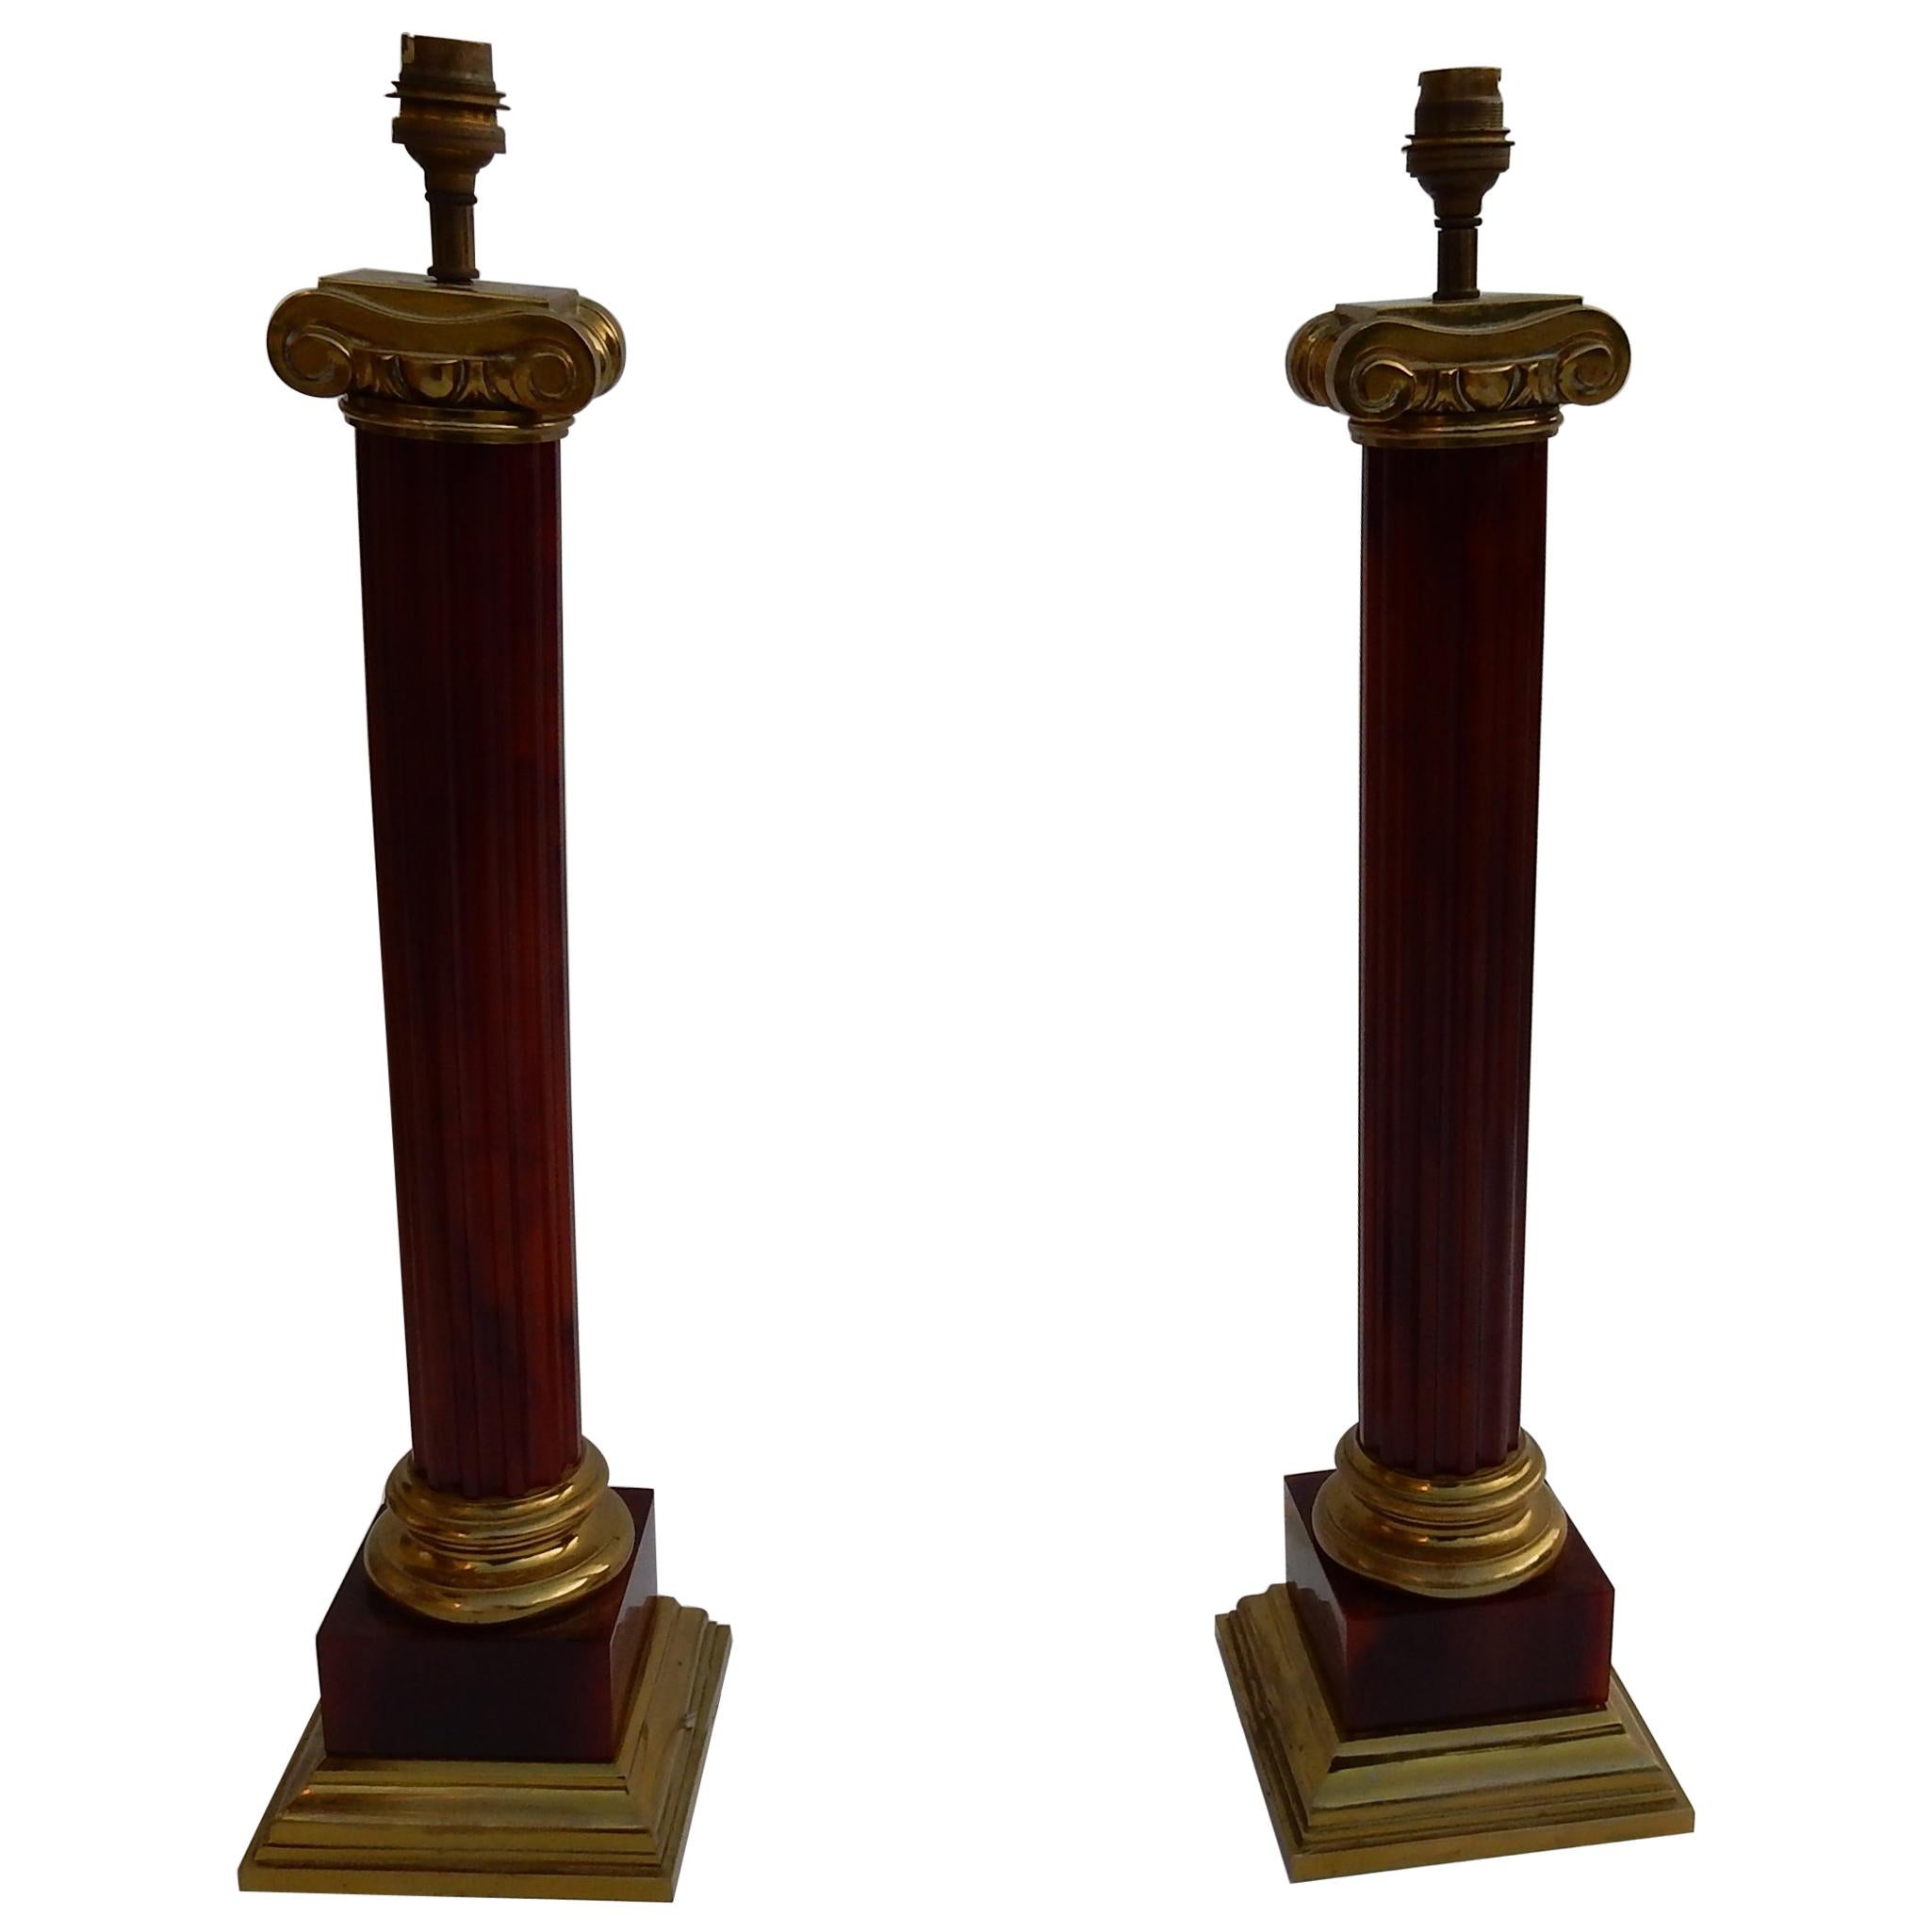 1950 1950-1970 Paar Lampen von Maison Jansen, vergoldete Bronze und Bakelit, Bernsteinfarbe